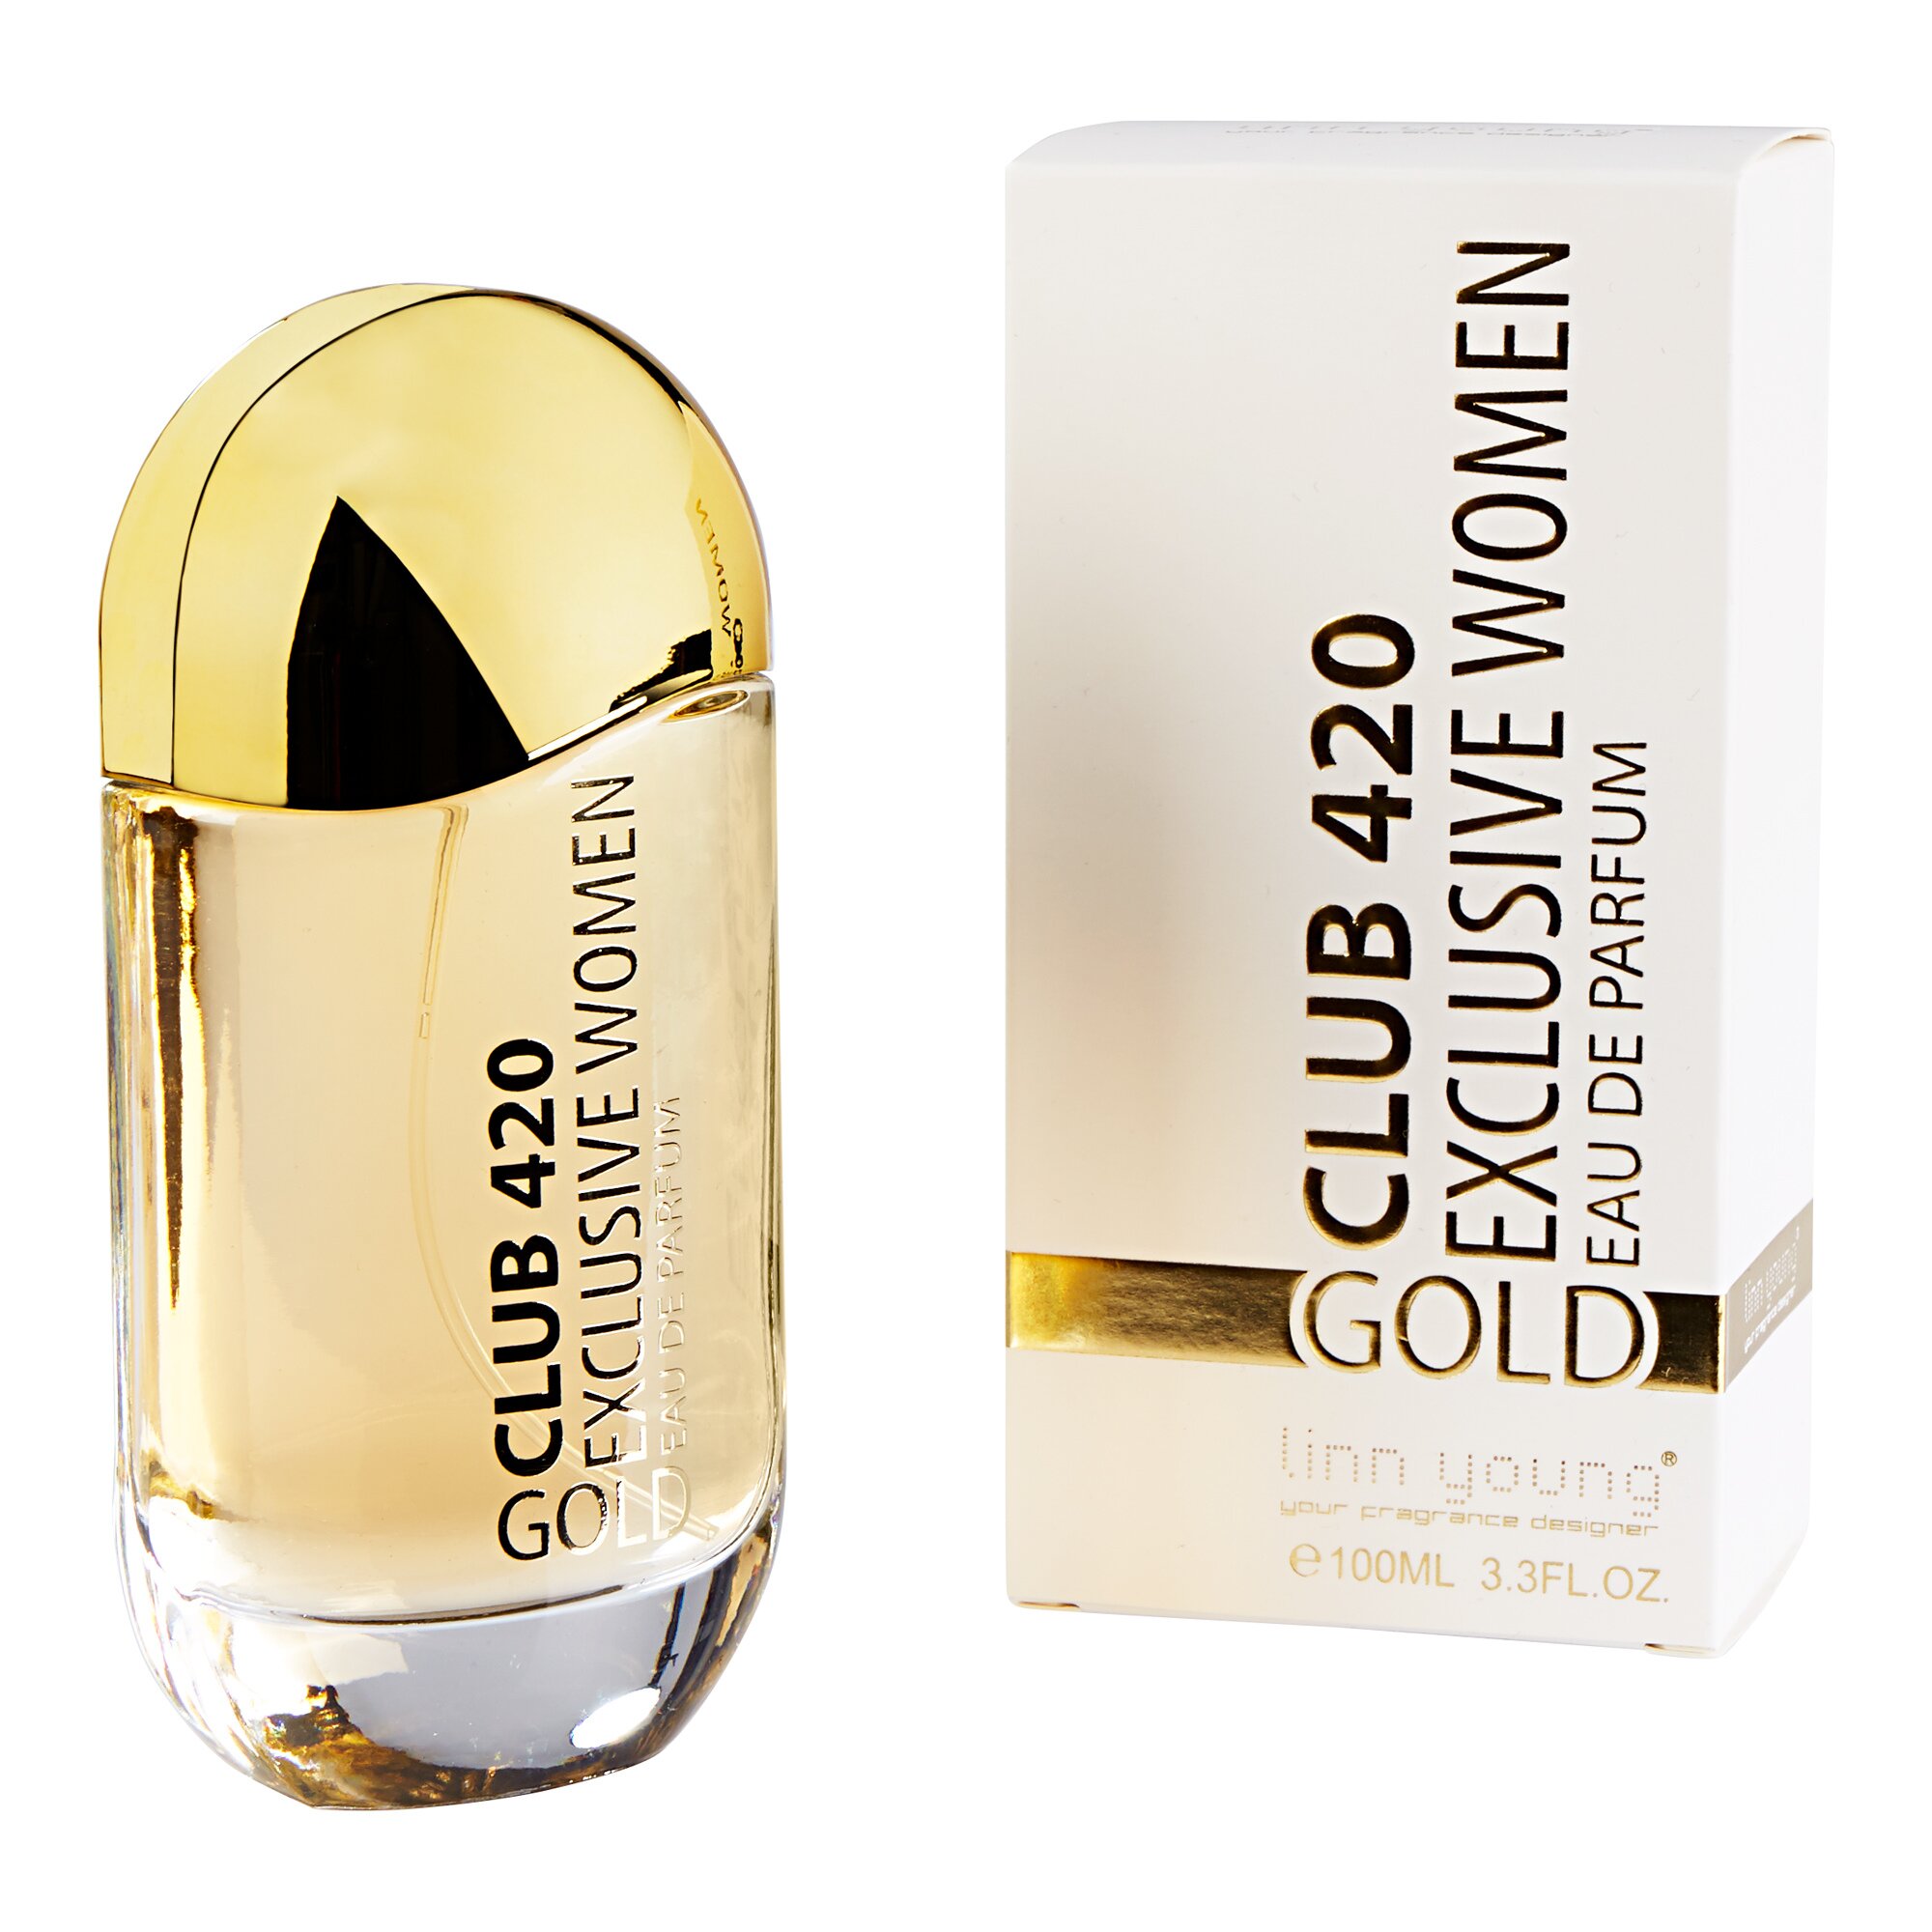 Image of Eau de Parfum "Club 420 Gold", 100 ml